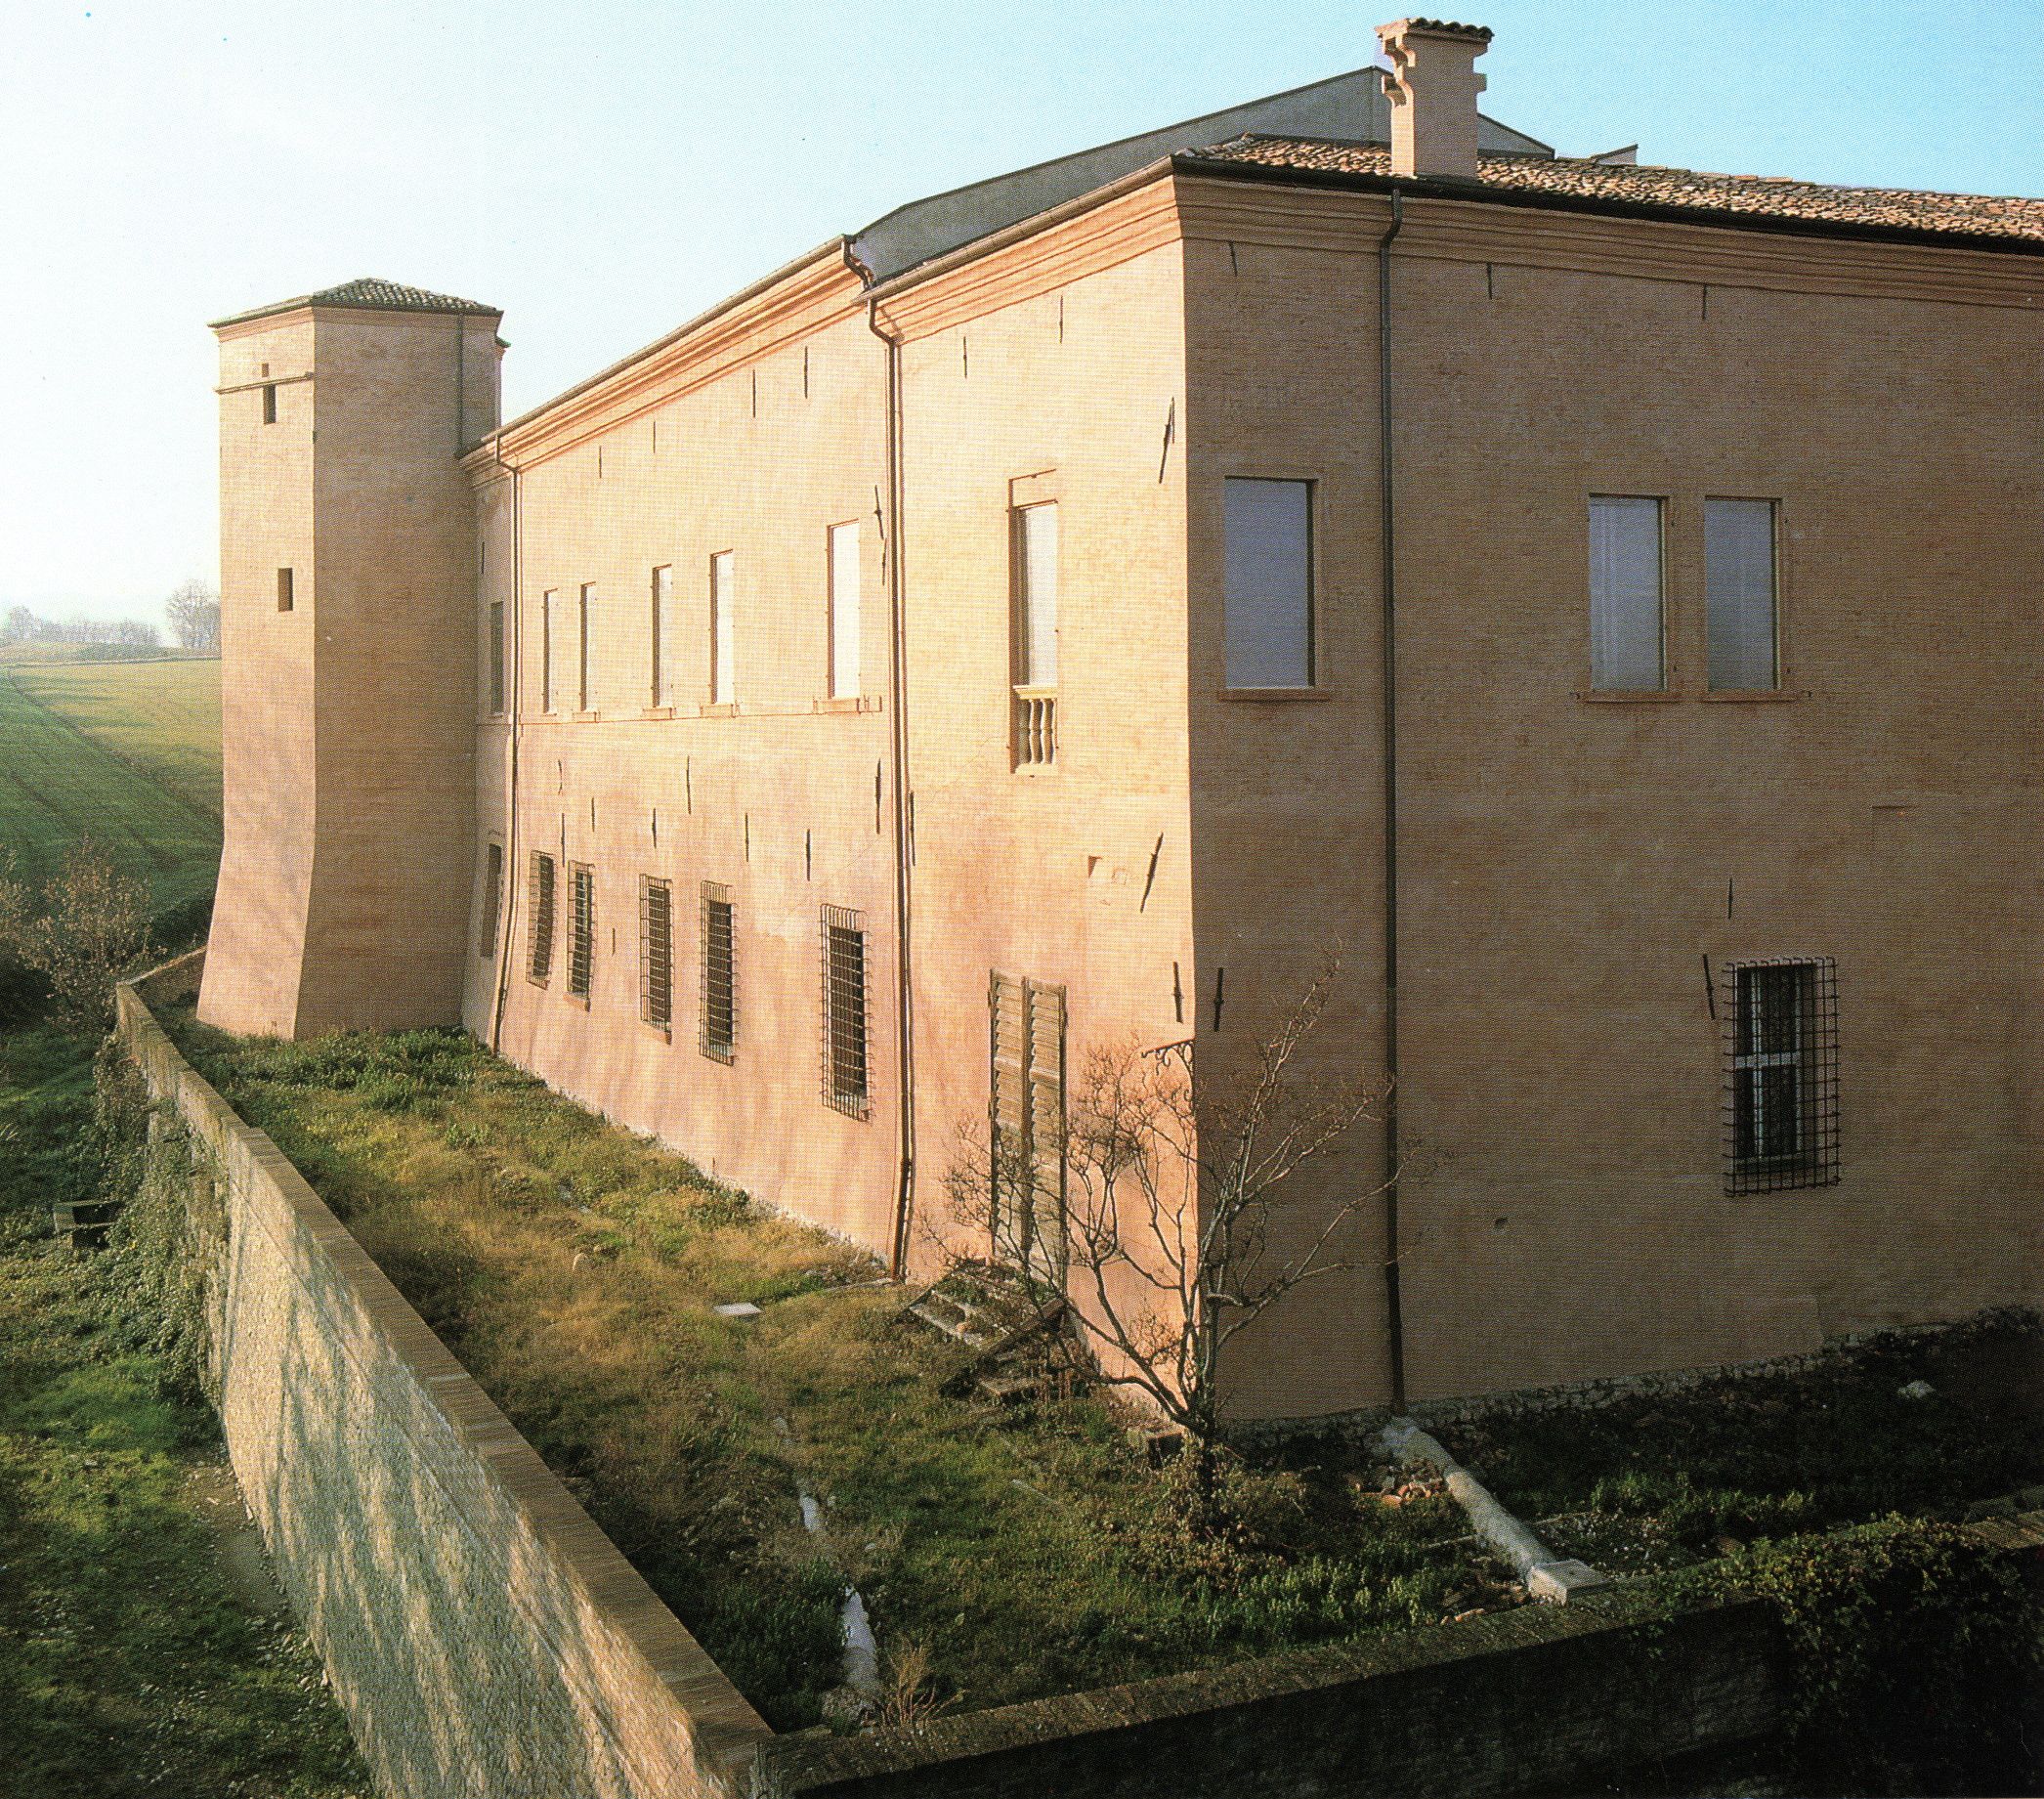 Spezzano castle, Fiorano Modenese